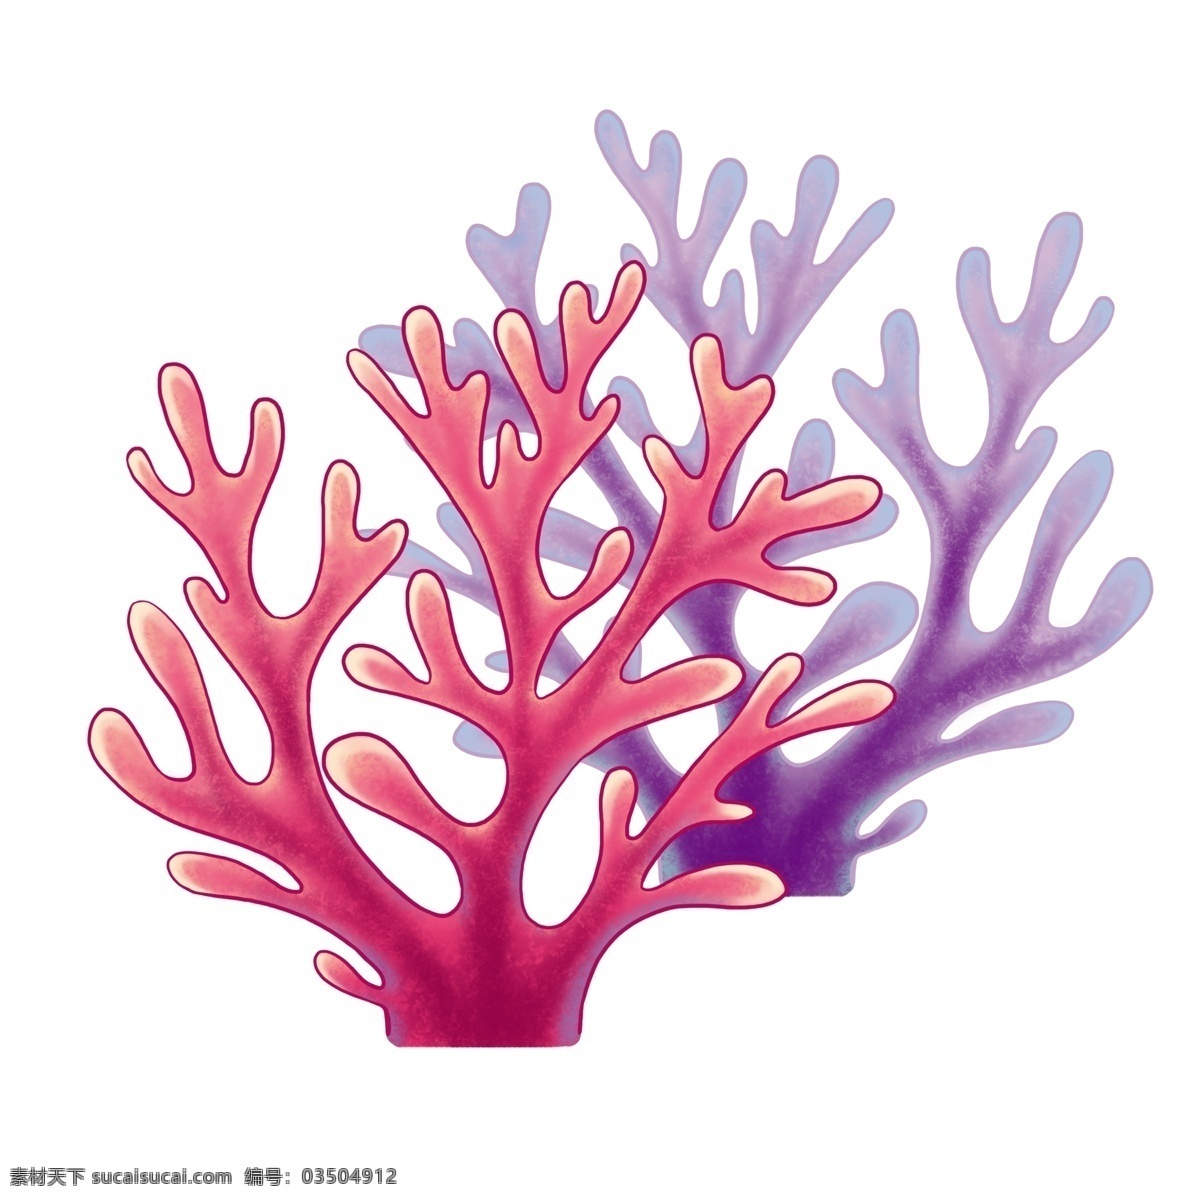 夏天 海洋 珊瑚 粉色 梦幻 渐变 卡通